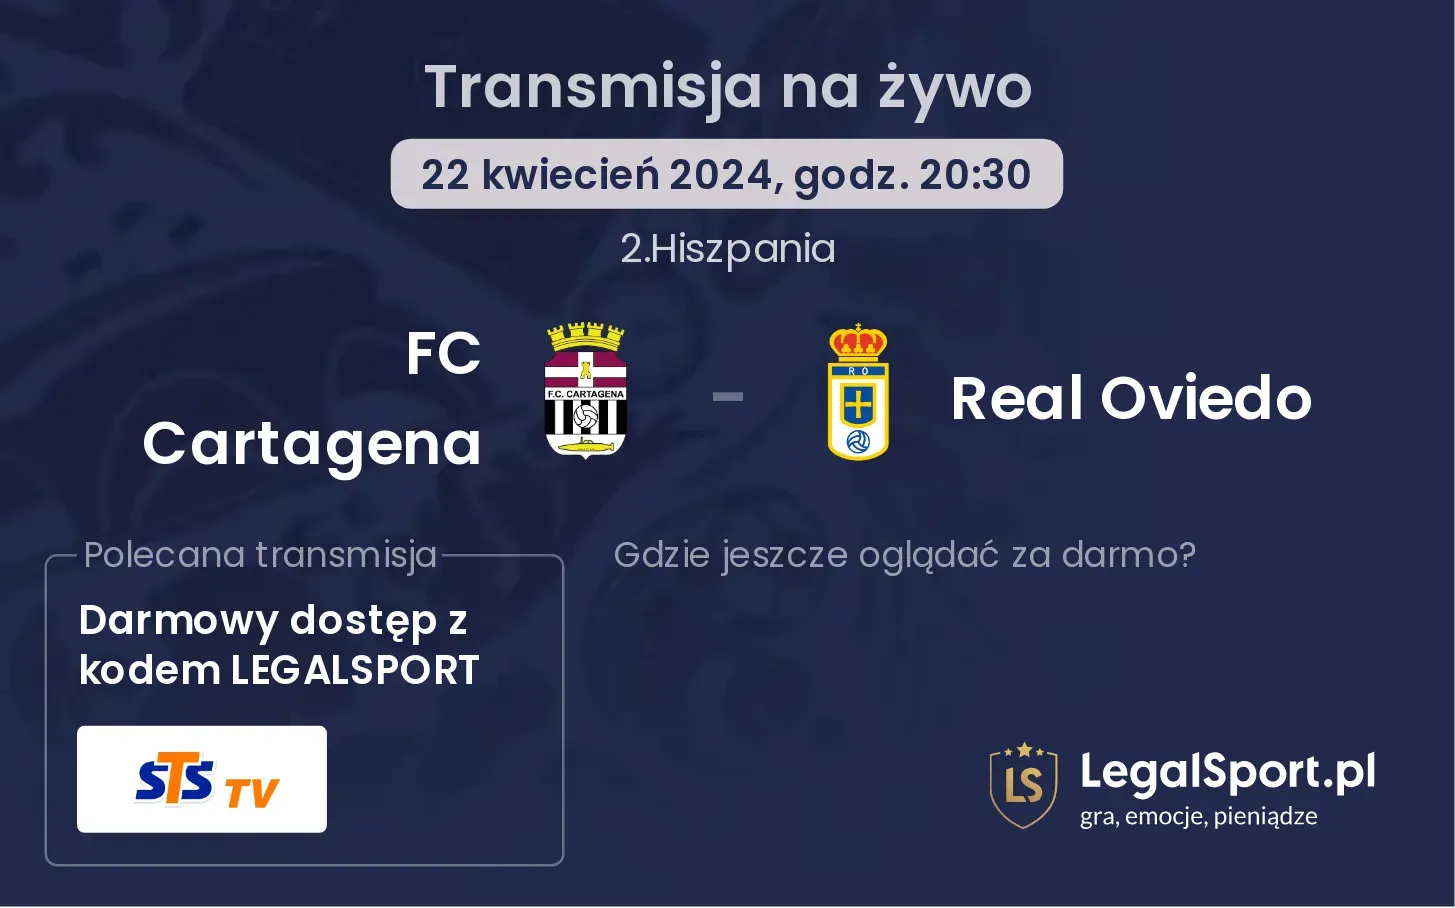 FC Cartagena - Real Oviedo transmisja na żywo